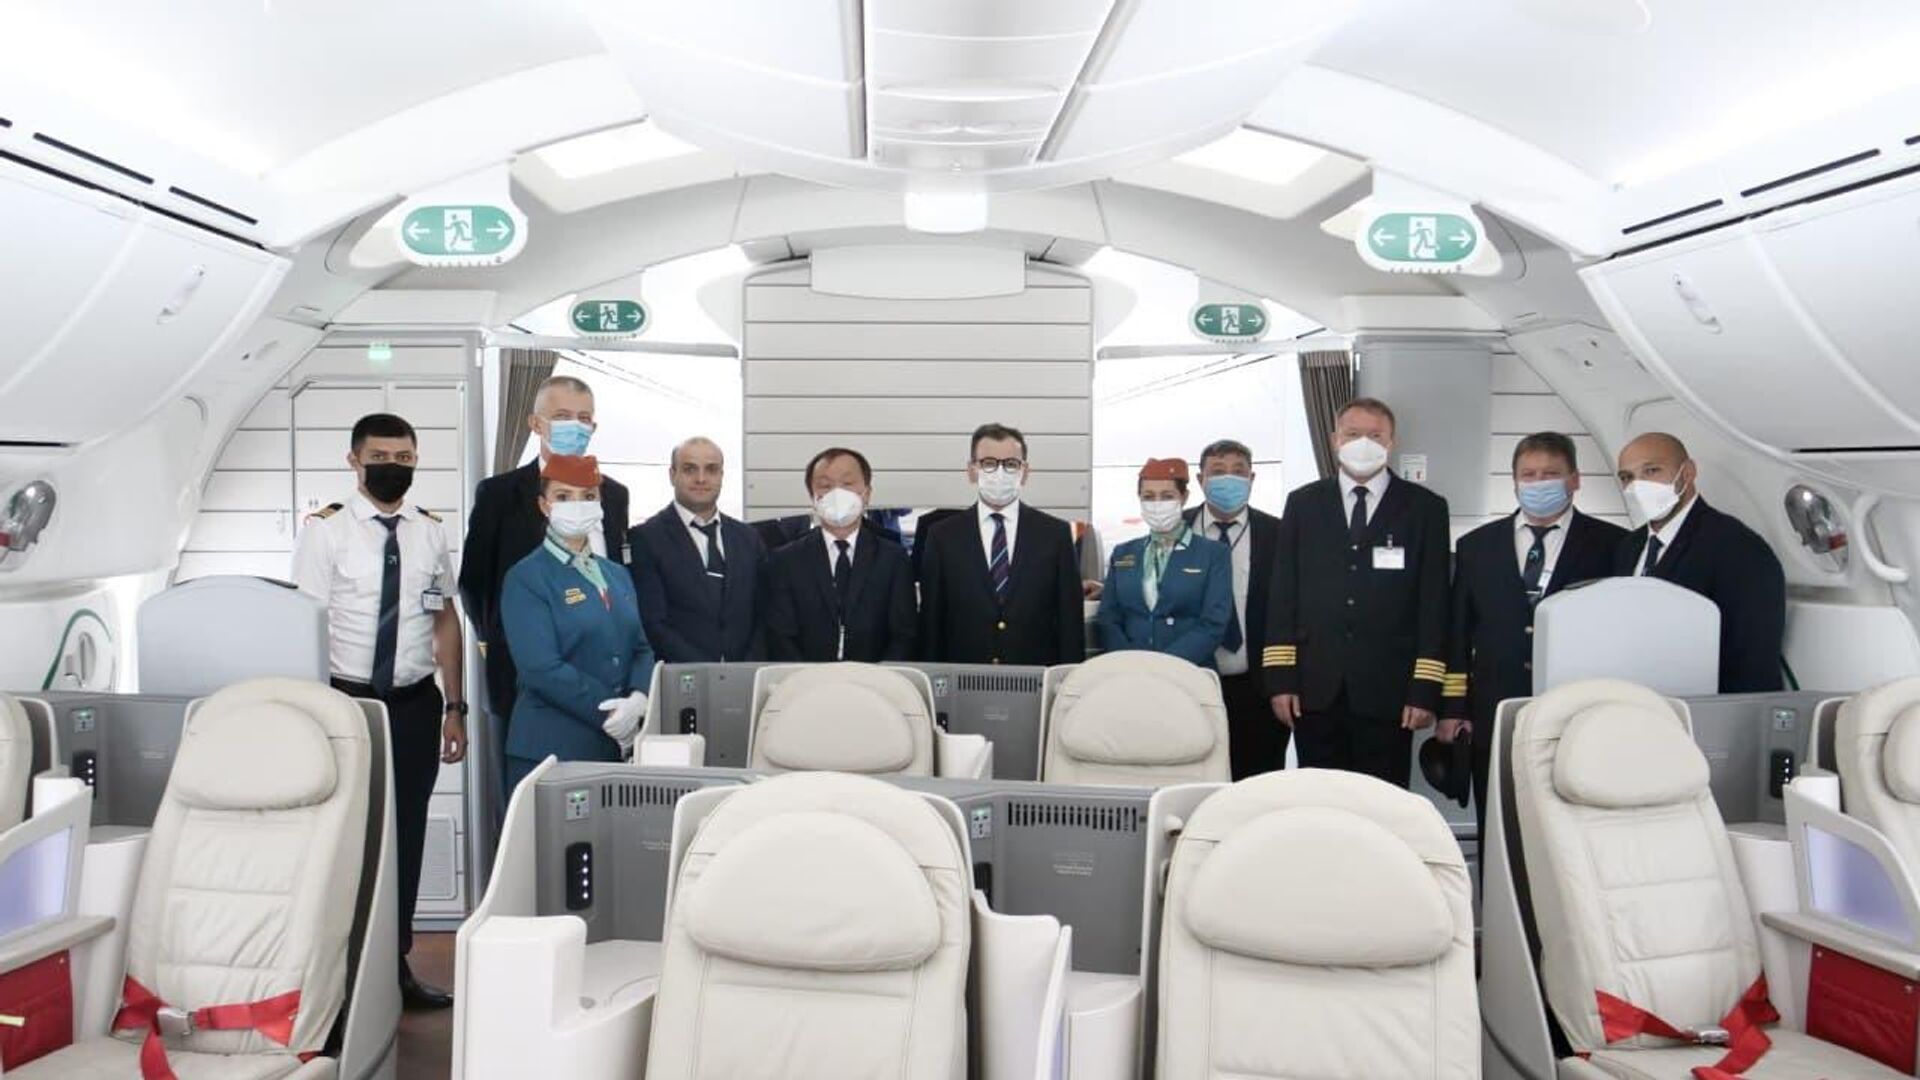 Узбекские авиалинии получили шестой Dreamliner - Sputnik Узбекистан, 1920, 05.05.2021